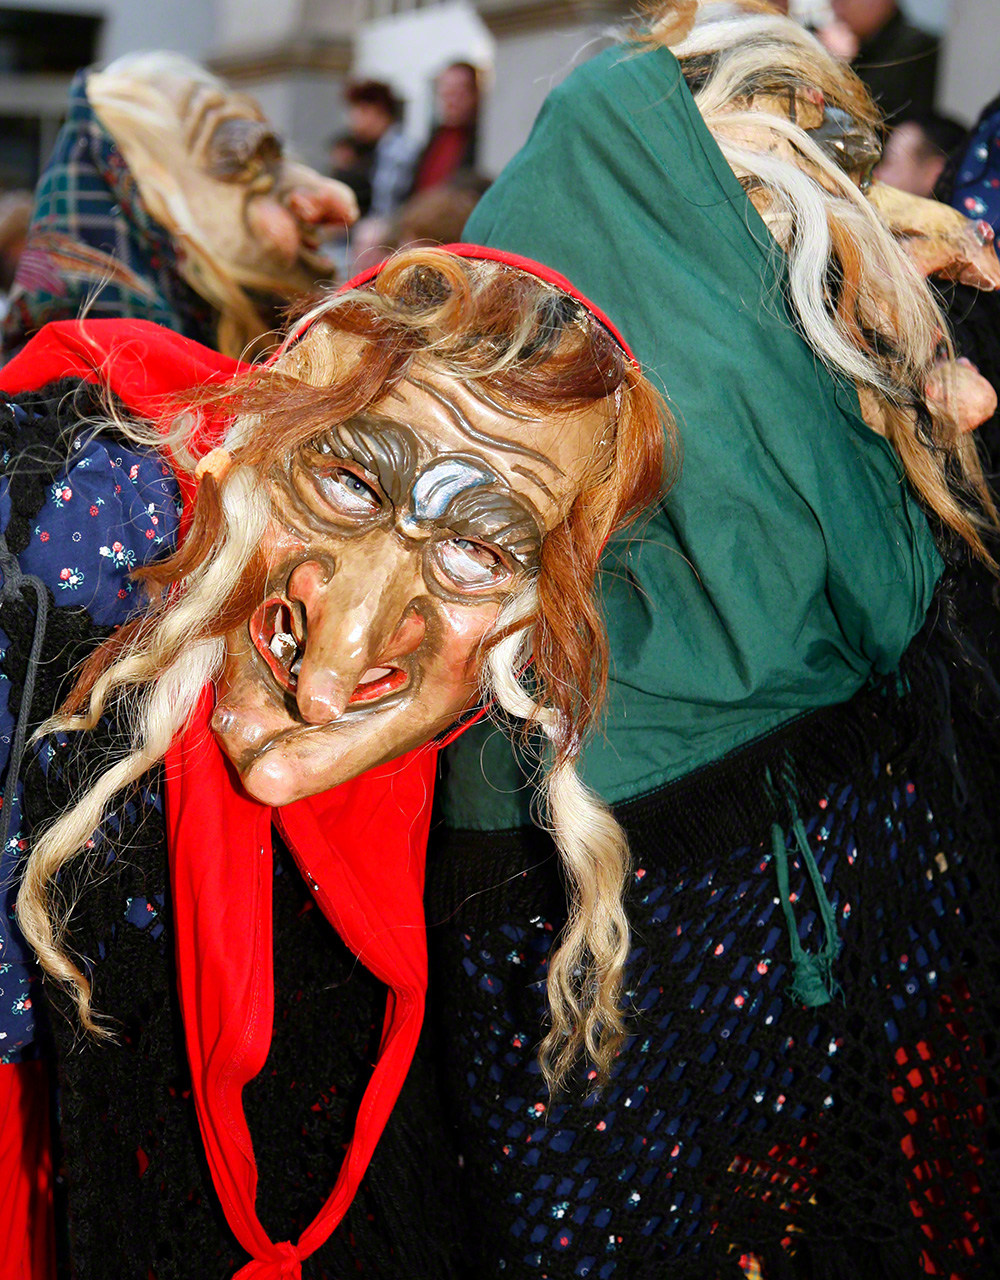 Démon participant à un carnaval en Allemagne, au cours duquel les gens habillés de vêtements et de costumes traditionnels défilent dans la ville.